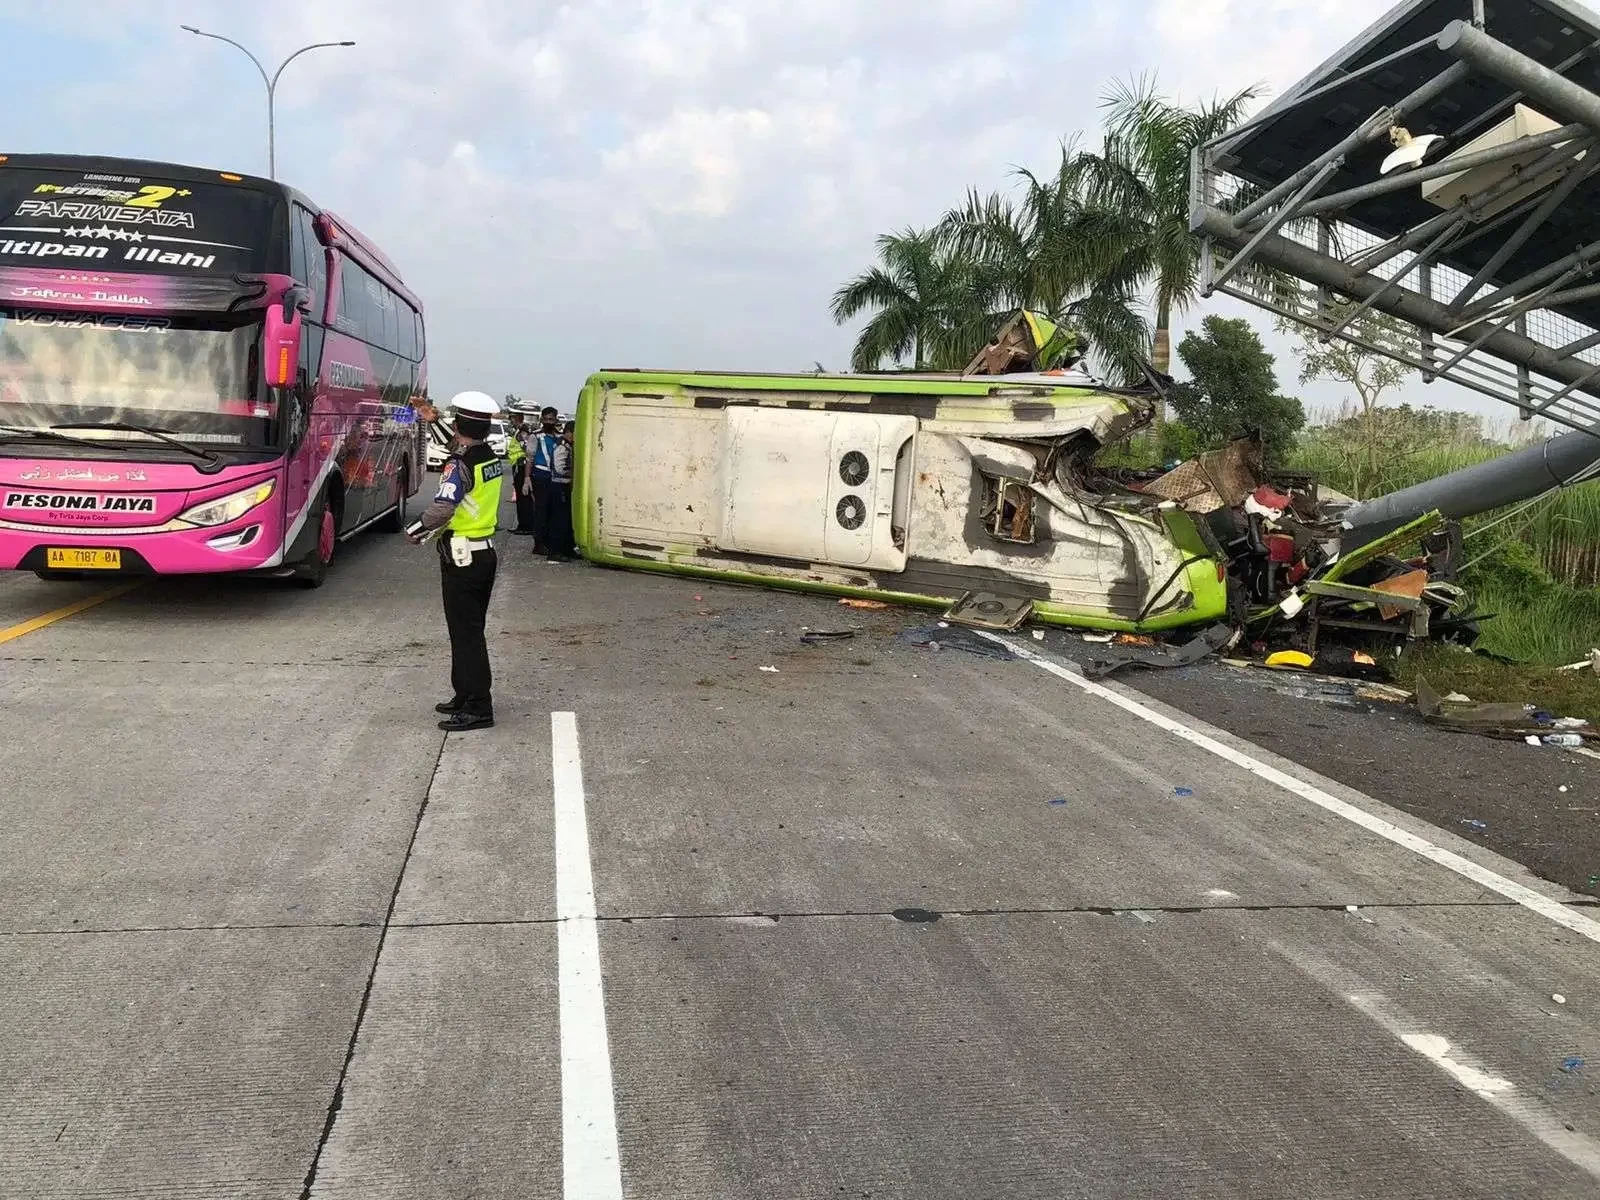 Kondisi bus Ardiansyah usai kecelakaan tunggal di Tol Surabaya-Mojokerto, Senin 16 Mei 2022. (Foto: PJR Polda Jatim)